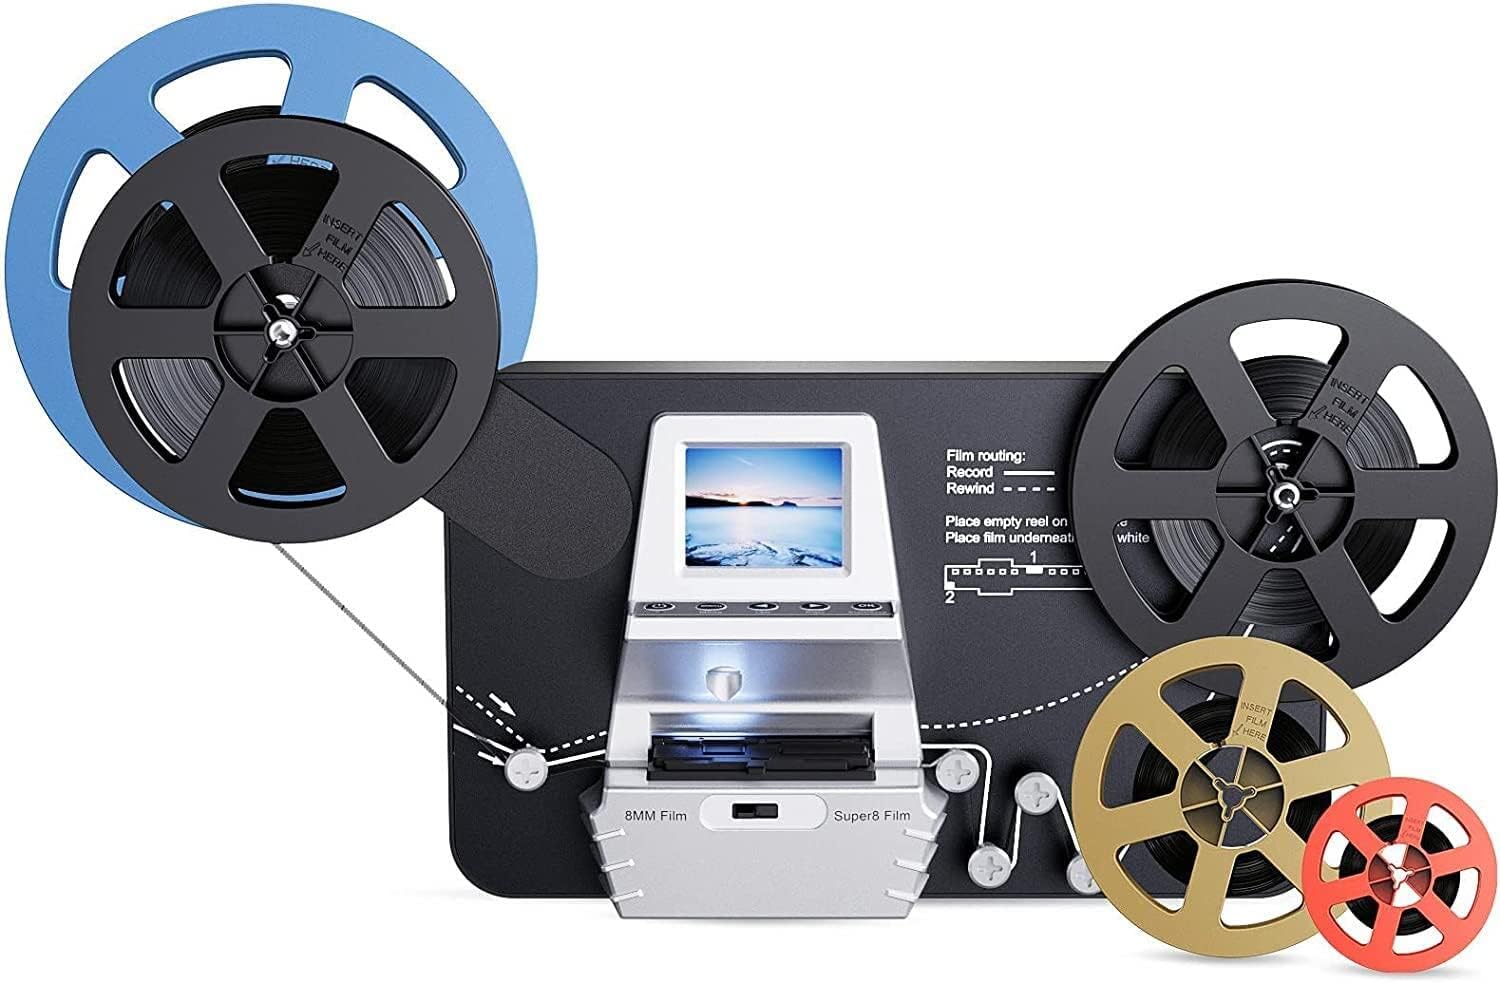 8mm & Super 8 Film to Digital Converter, Film Scanner Digitizer - $175